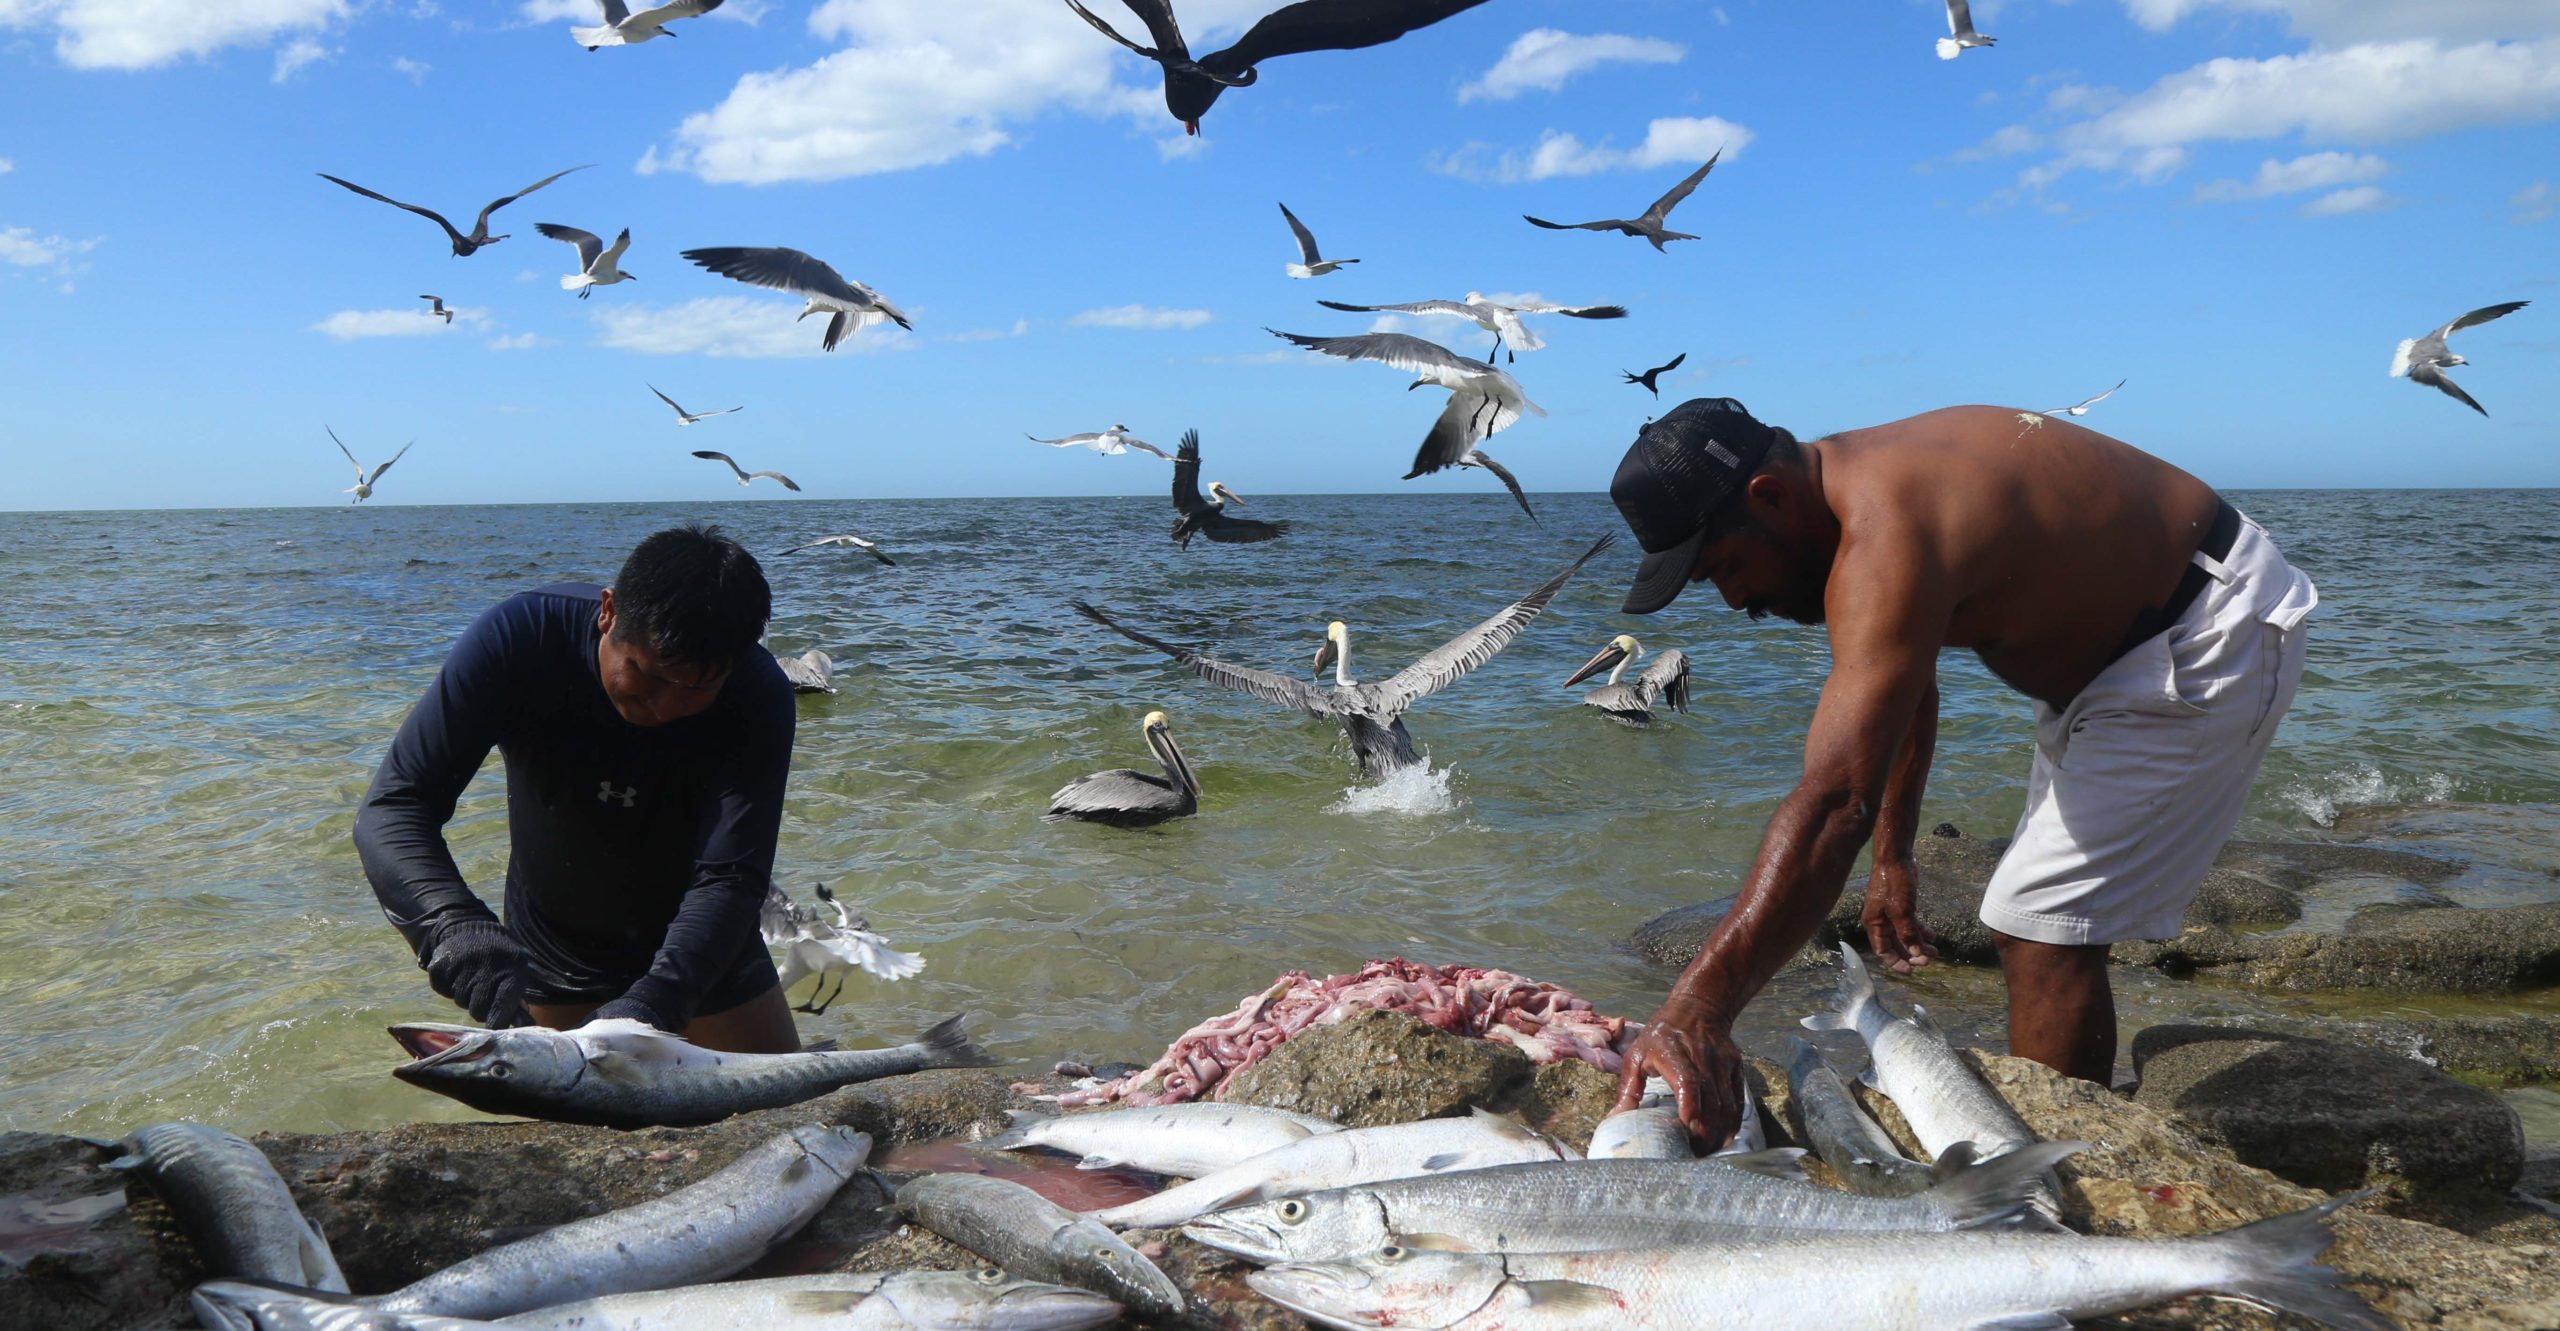 Entre 2012 y 2020 se incremento el consumo de pescados y mariscos de 8.9 a 13.9 kilogramos por persona al año. (Cuartoscuro)